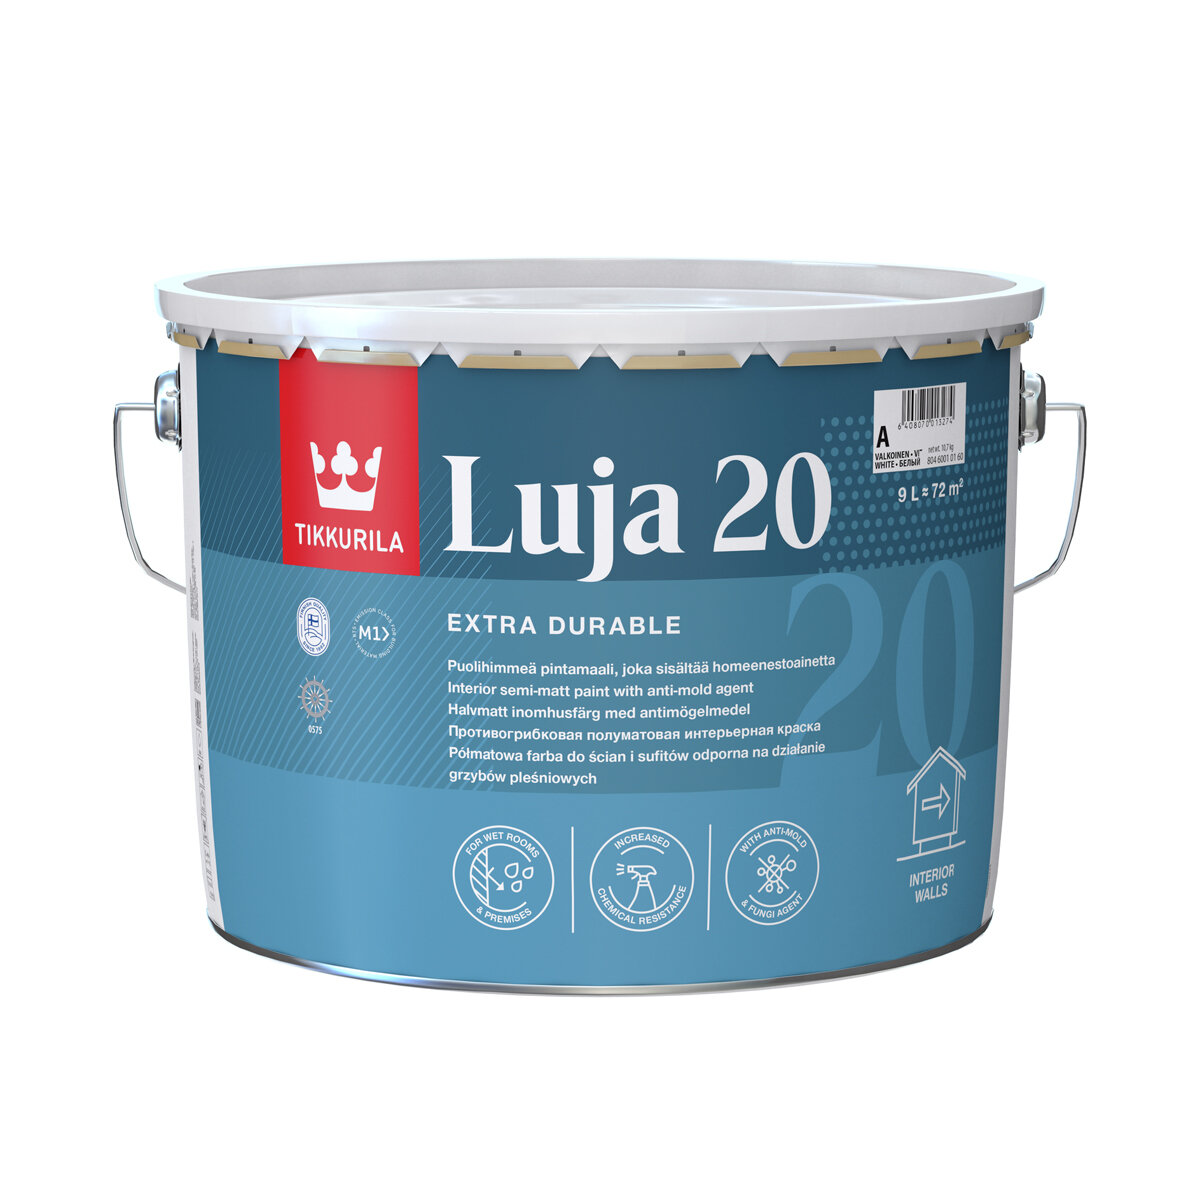 TIKKURILA LUJA EXTRA 20 краска антигрибковая для влажных помещений, полуматовая, база A (9л)